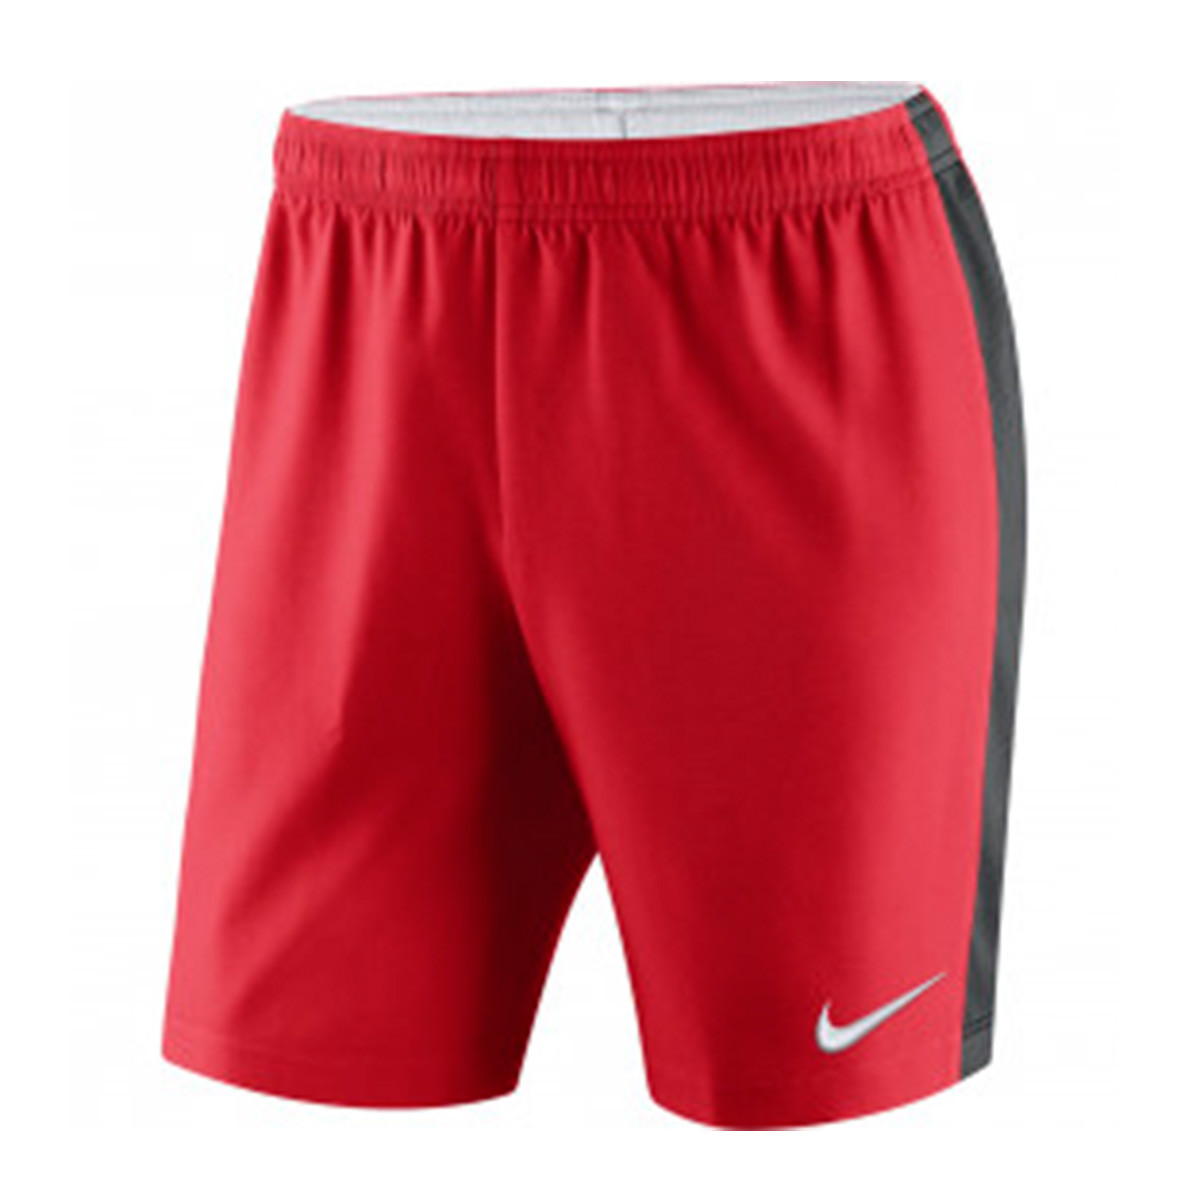 Shorts Nike Venom Woven University red 